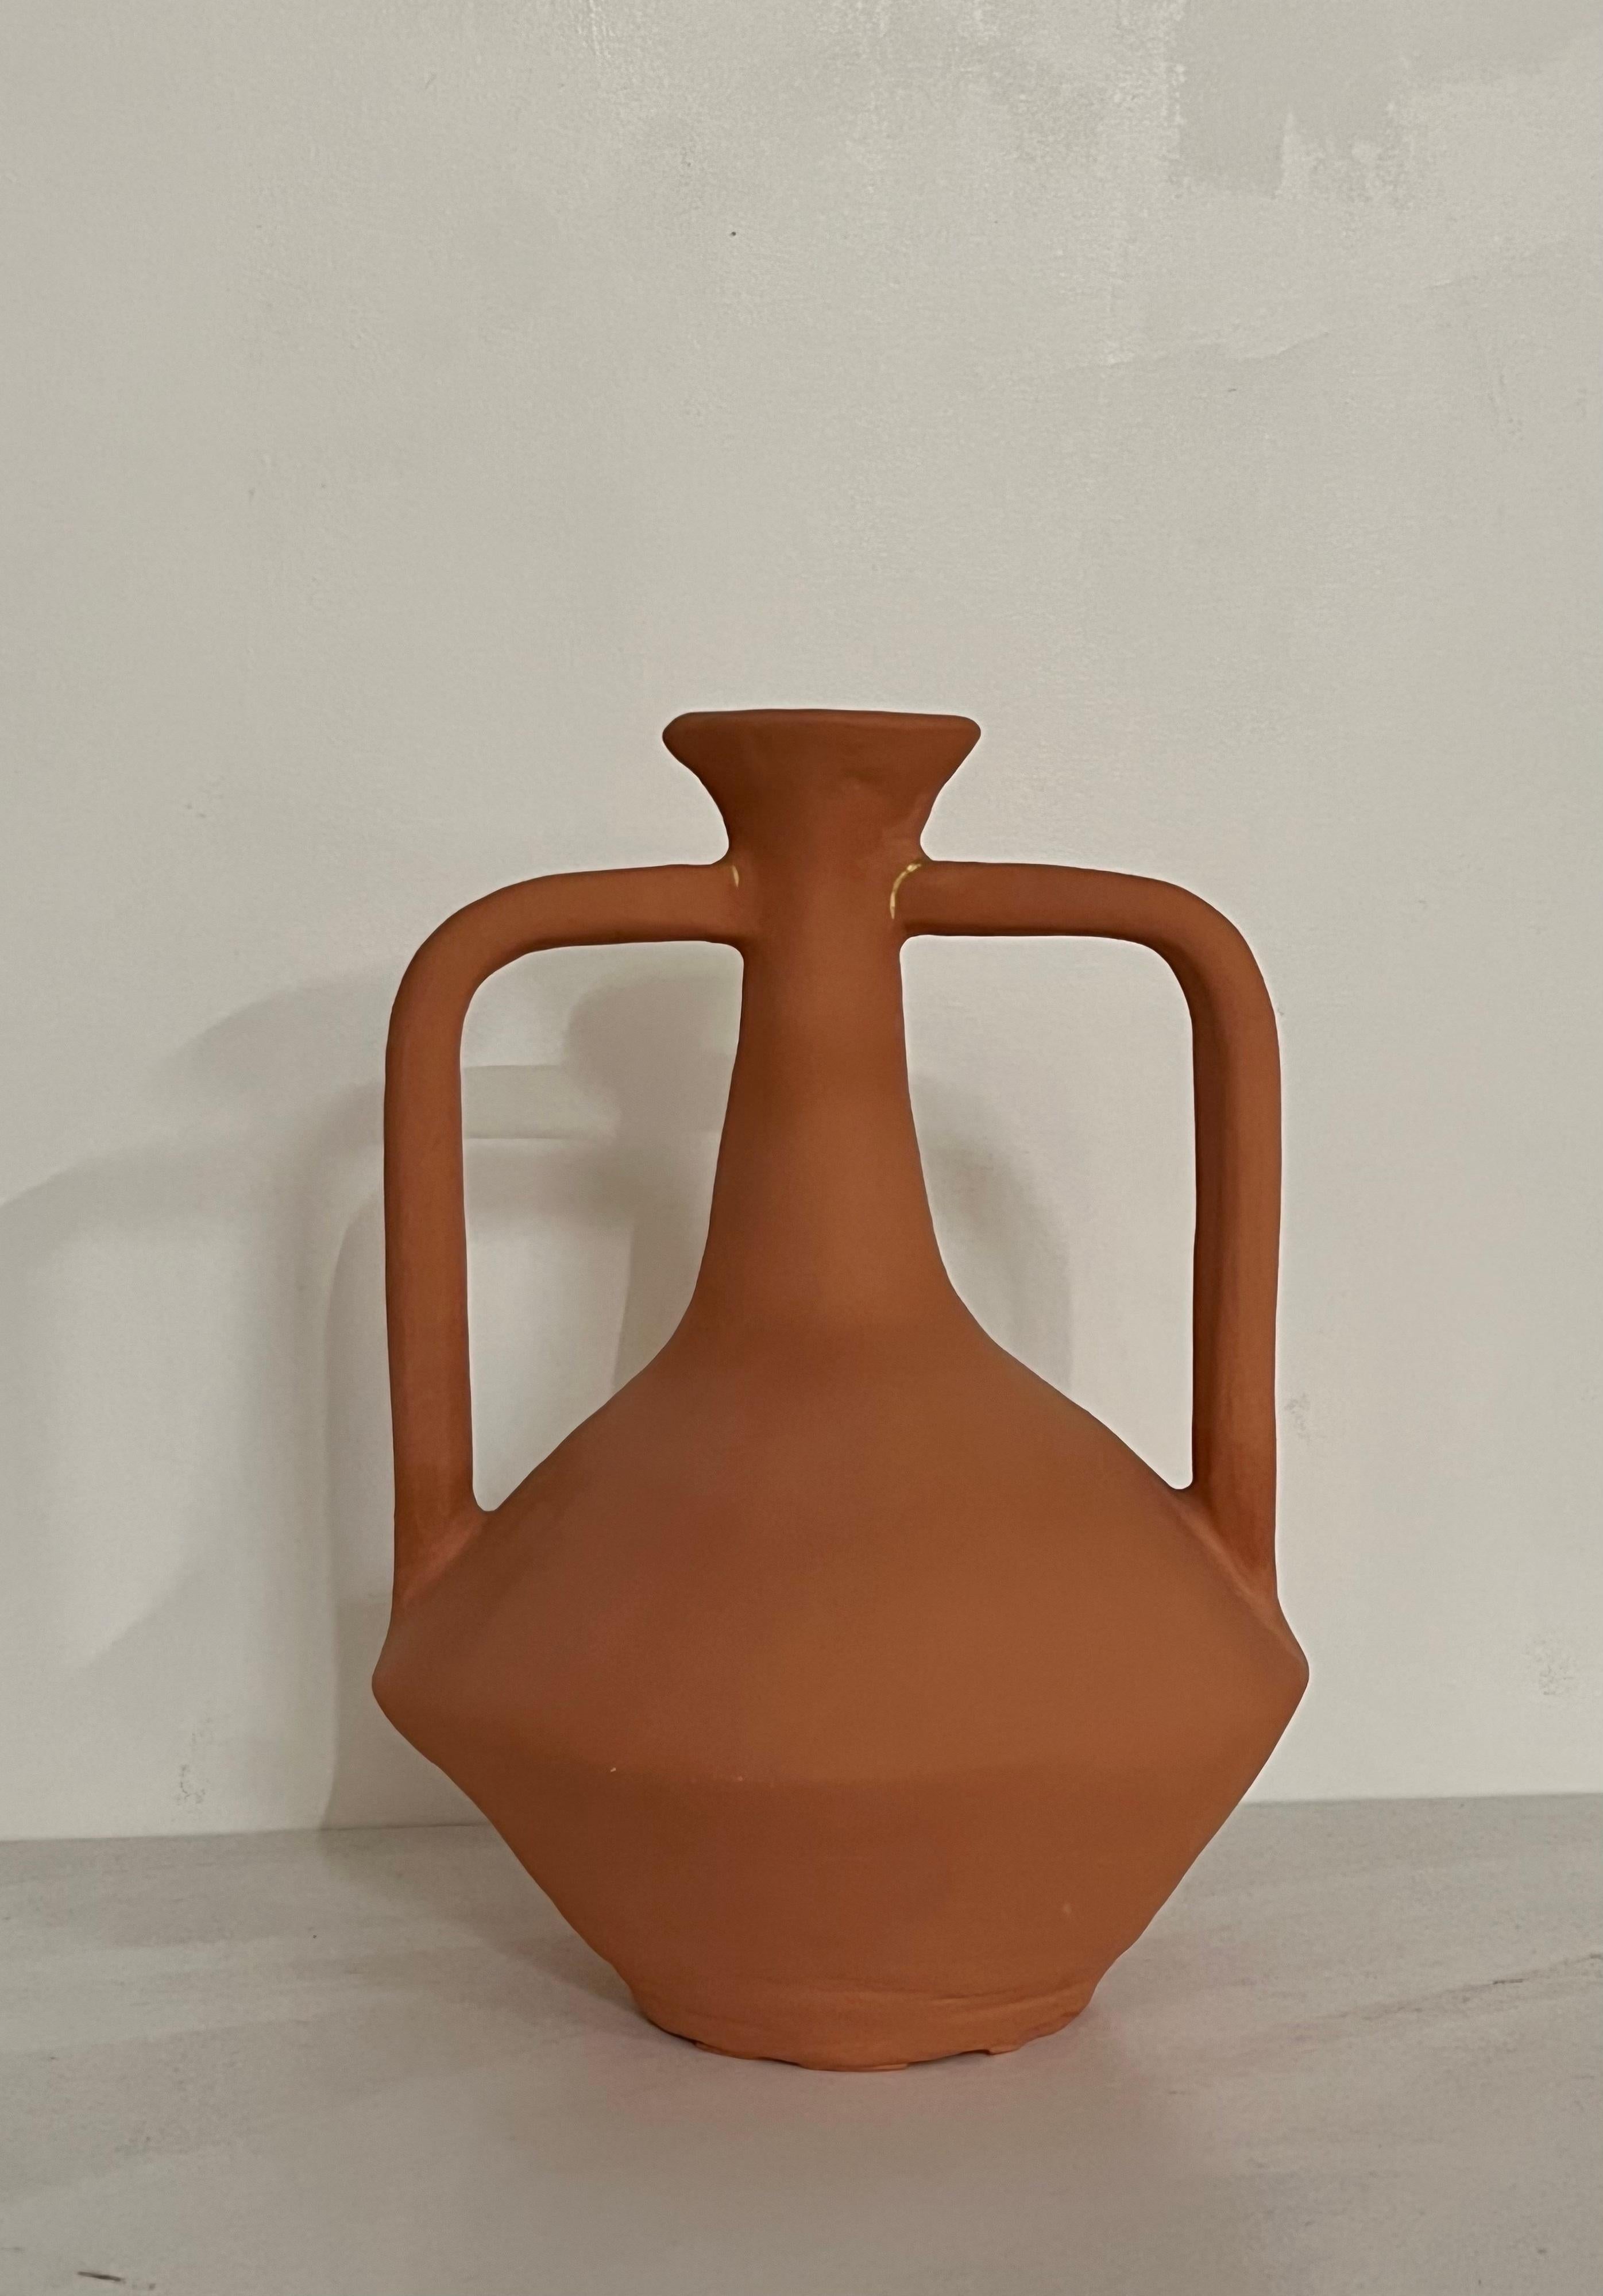 Vase à col court en terre cuite de Solem Ceramics
Dimensions : Ø 20,5 x H 30,5 cm.
Matériaux : Grès rouge, engobe de terre cuite.

L'œuvre de Solem puise dans les souvenirs de l'architecture et de la communauté de SWANA et de l'Asie du Sud-Est en